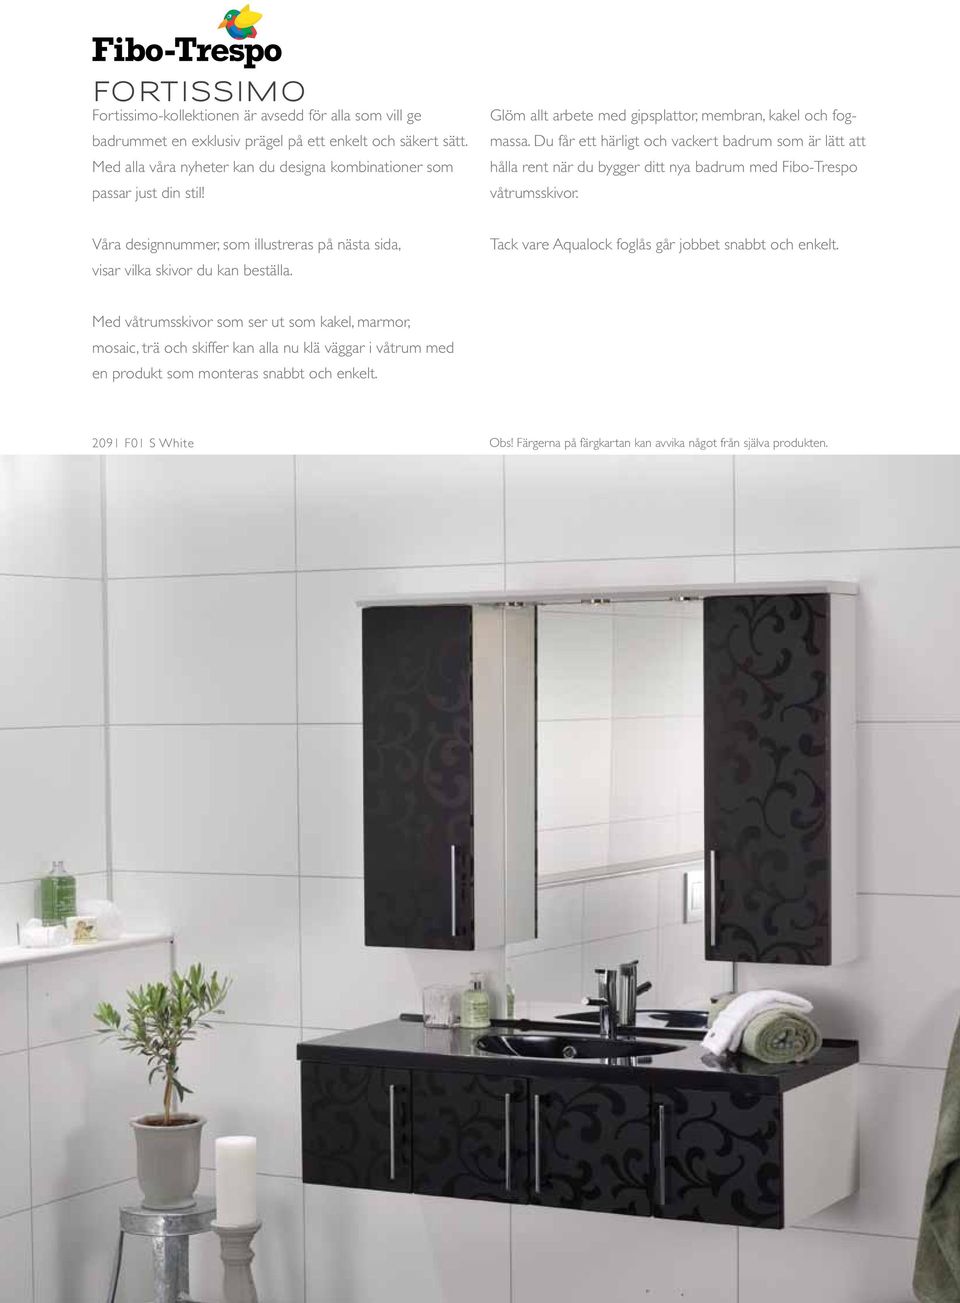 Du får ett härligt och vackert badrum som är lätt att hålla rent när du bygger ditt nya badrum med Fibo-Trespo våtrumsskivor.